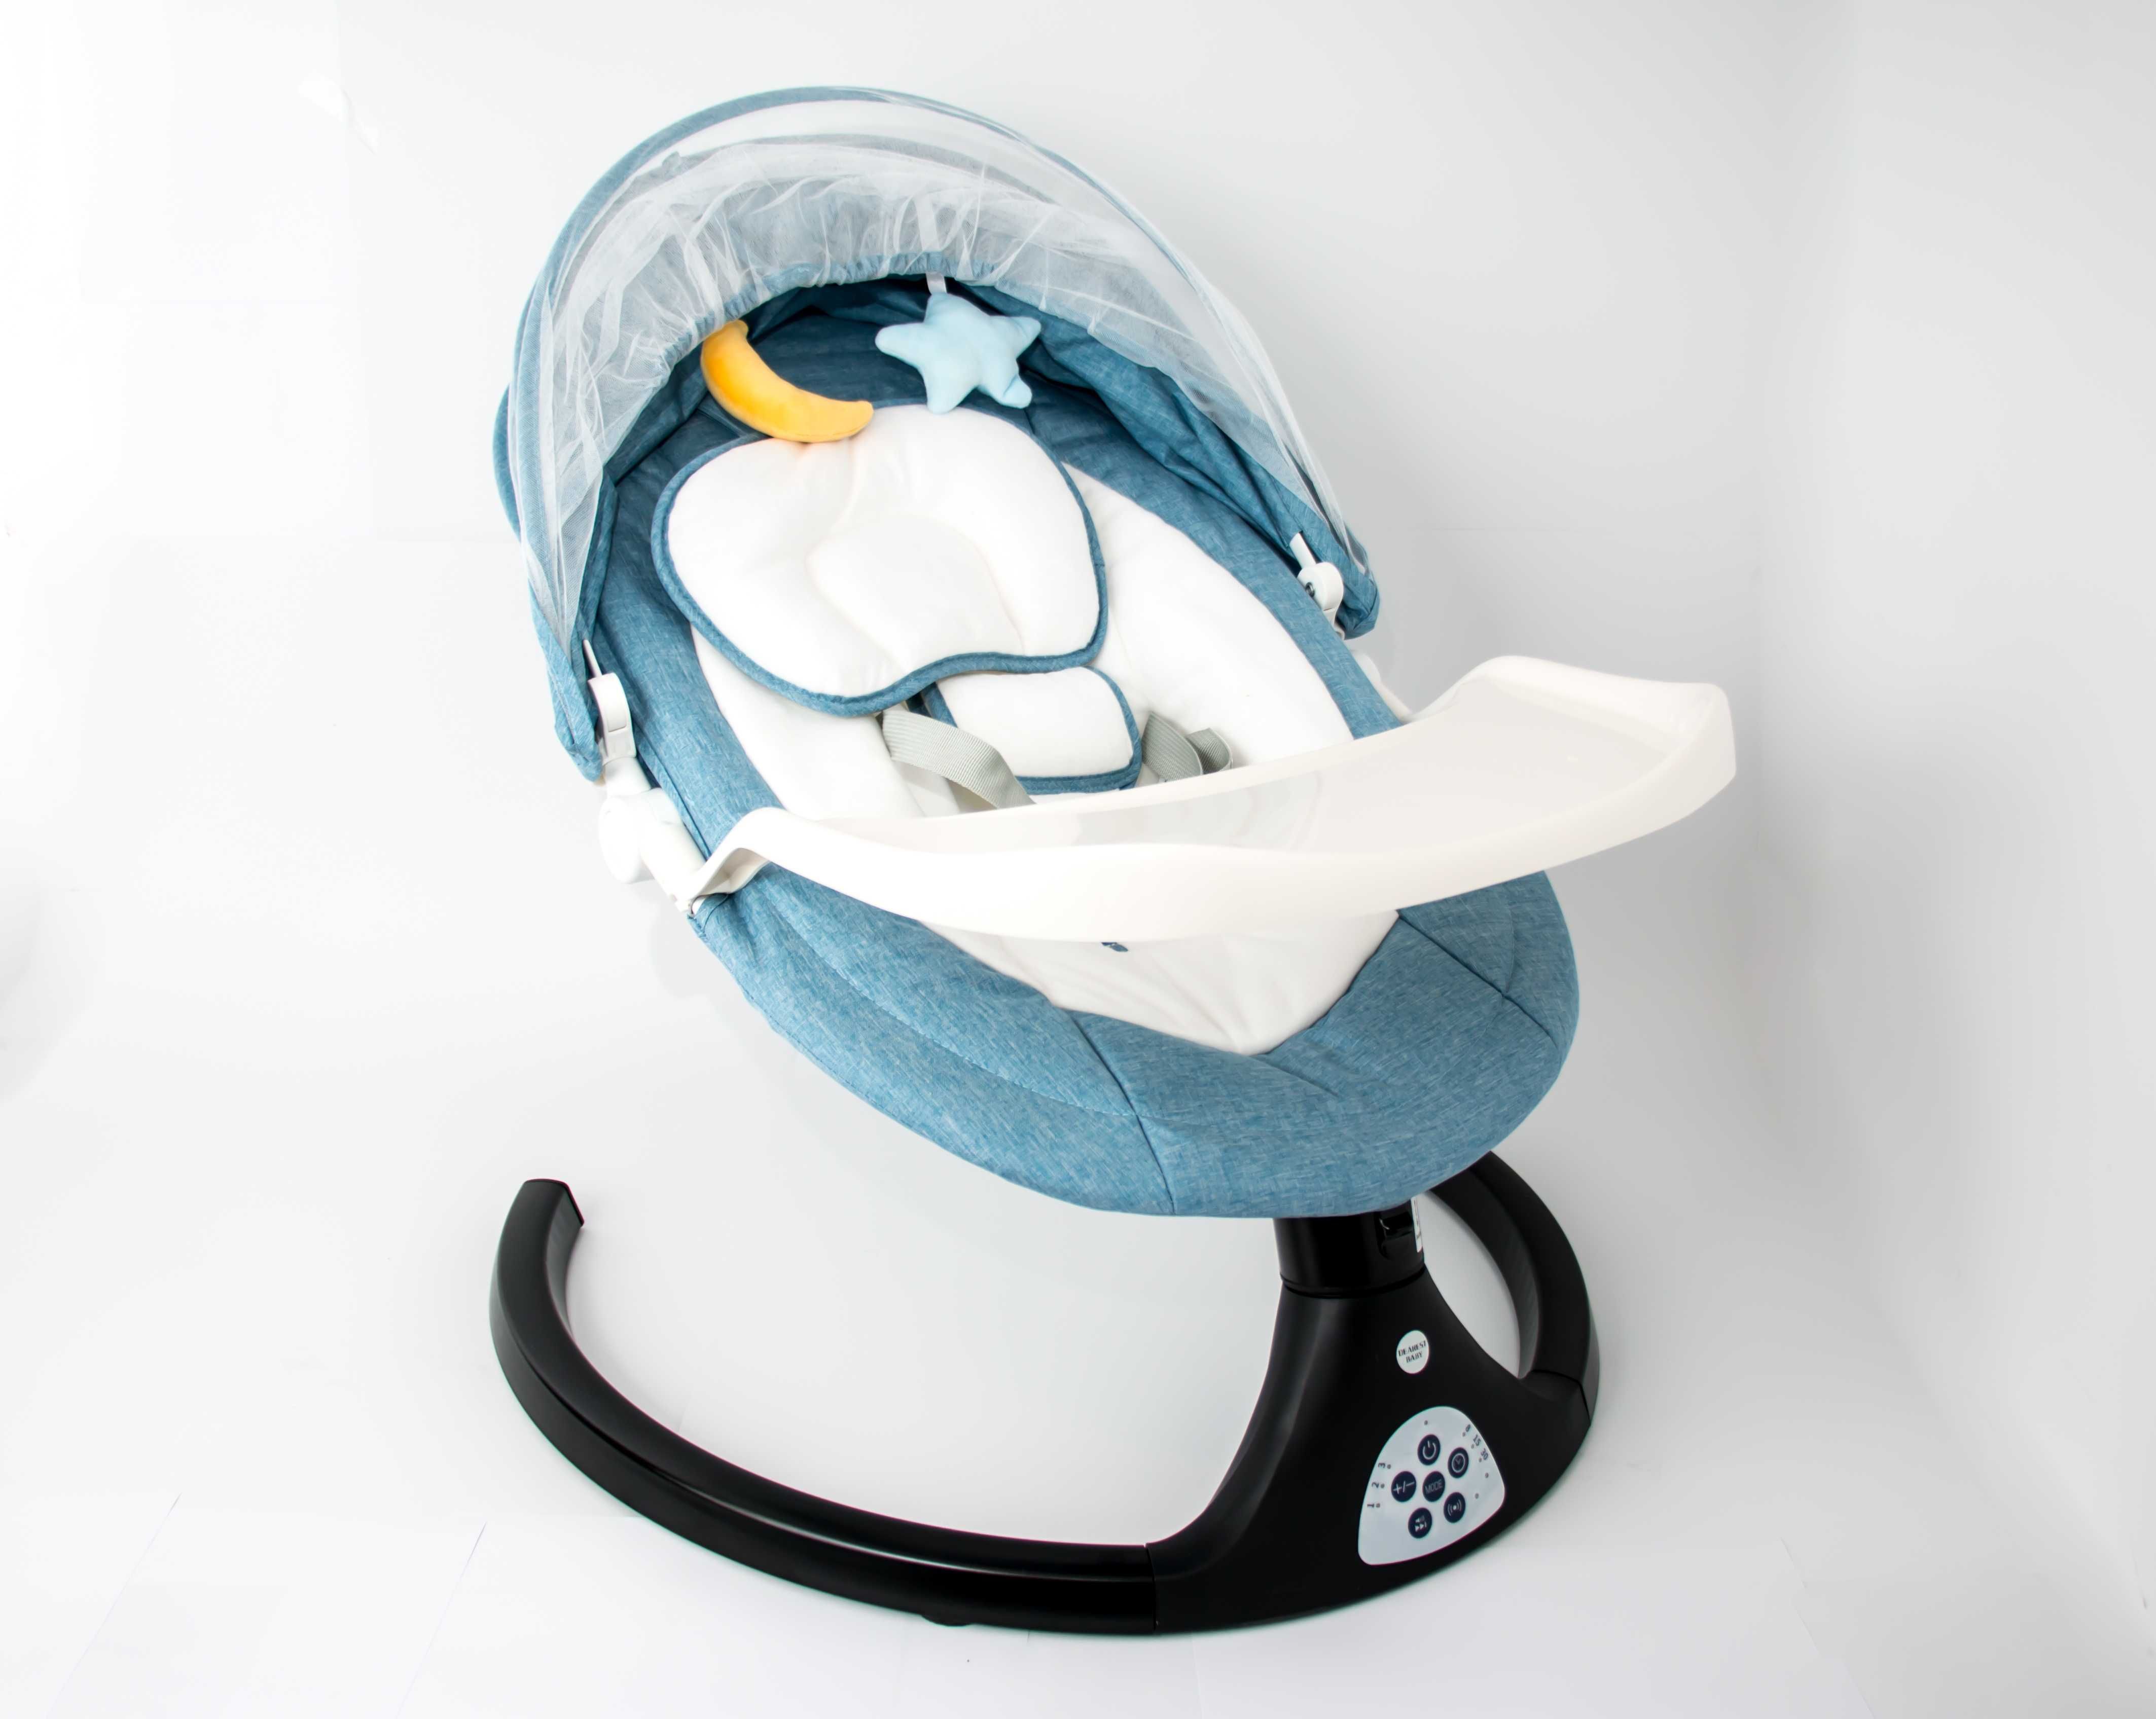 Balansoar electric pentru bebeluși confortabil pentru micuțul tău